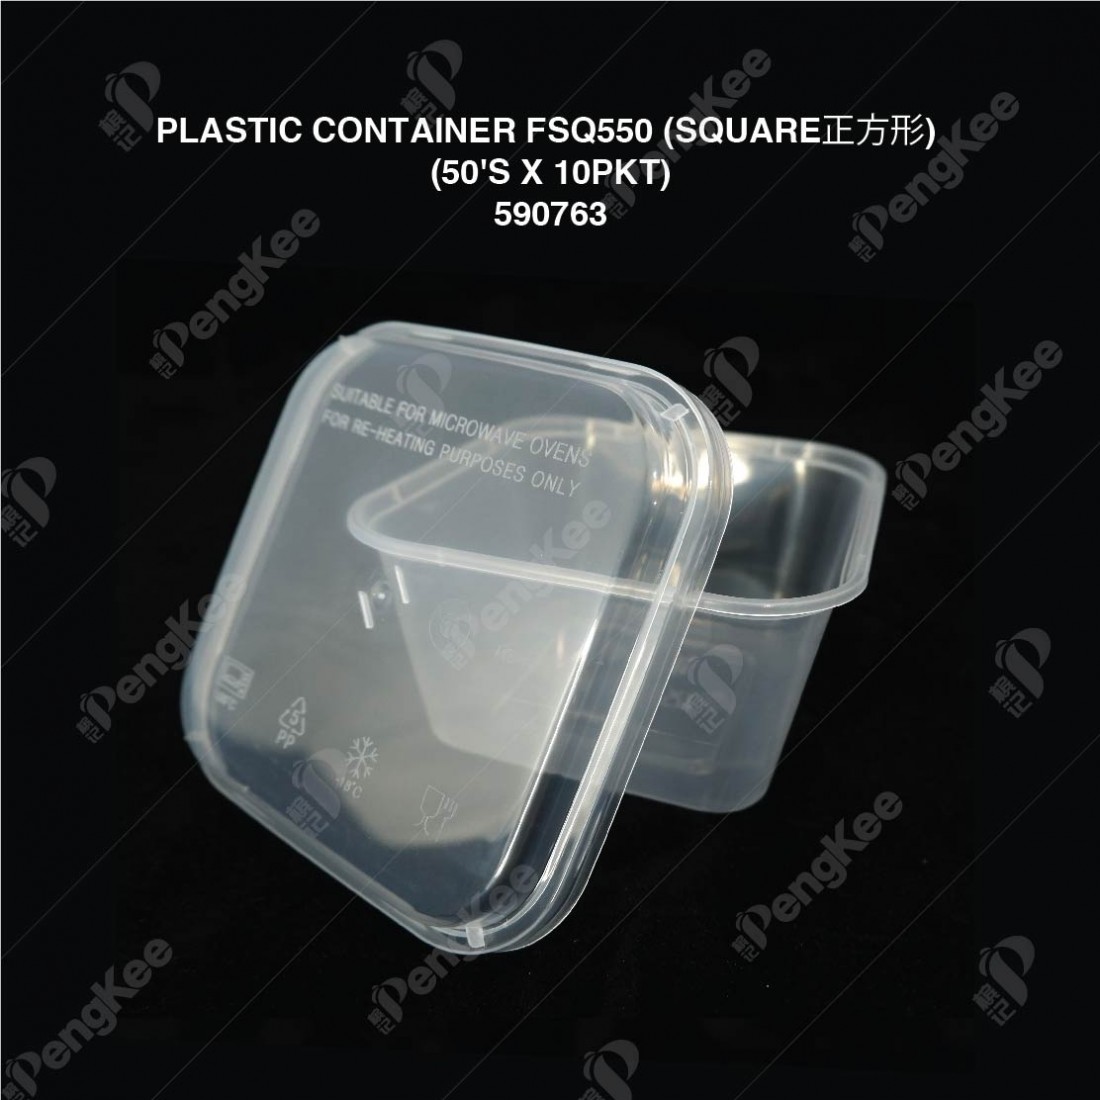 PLASTIC CONTAINER FSQ550 (SQUARE) (50'S X 10PKT)